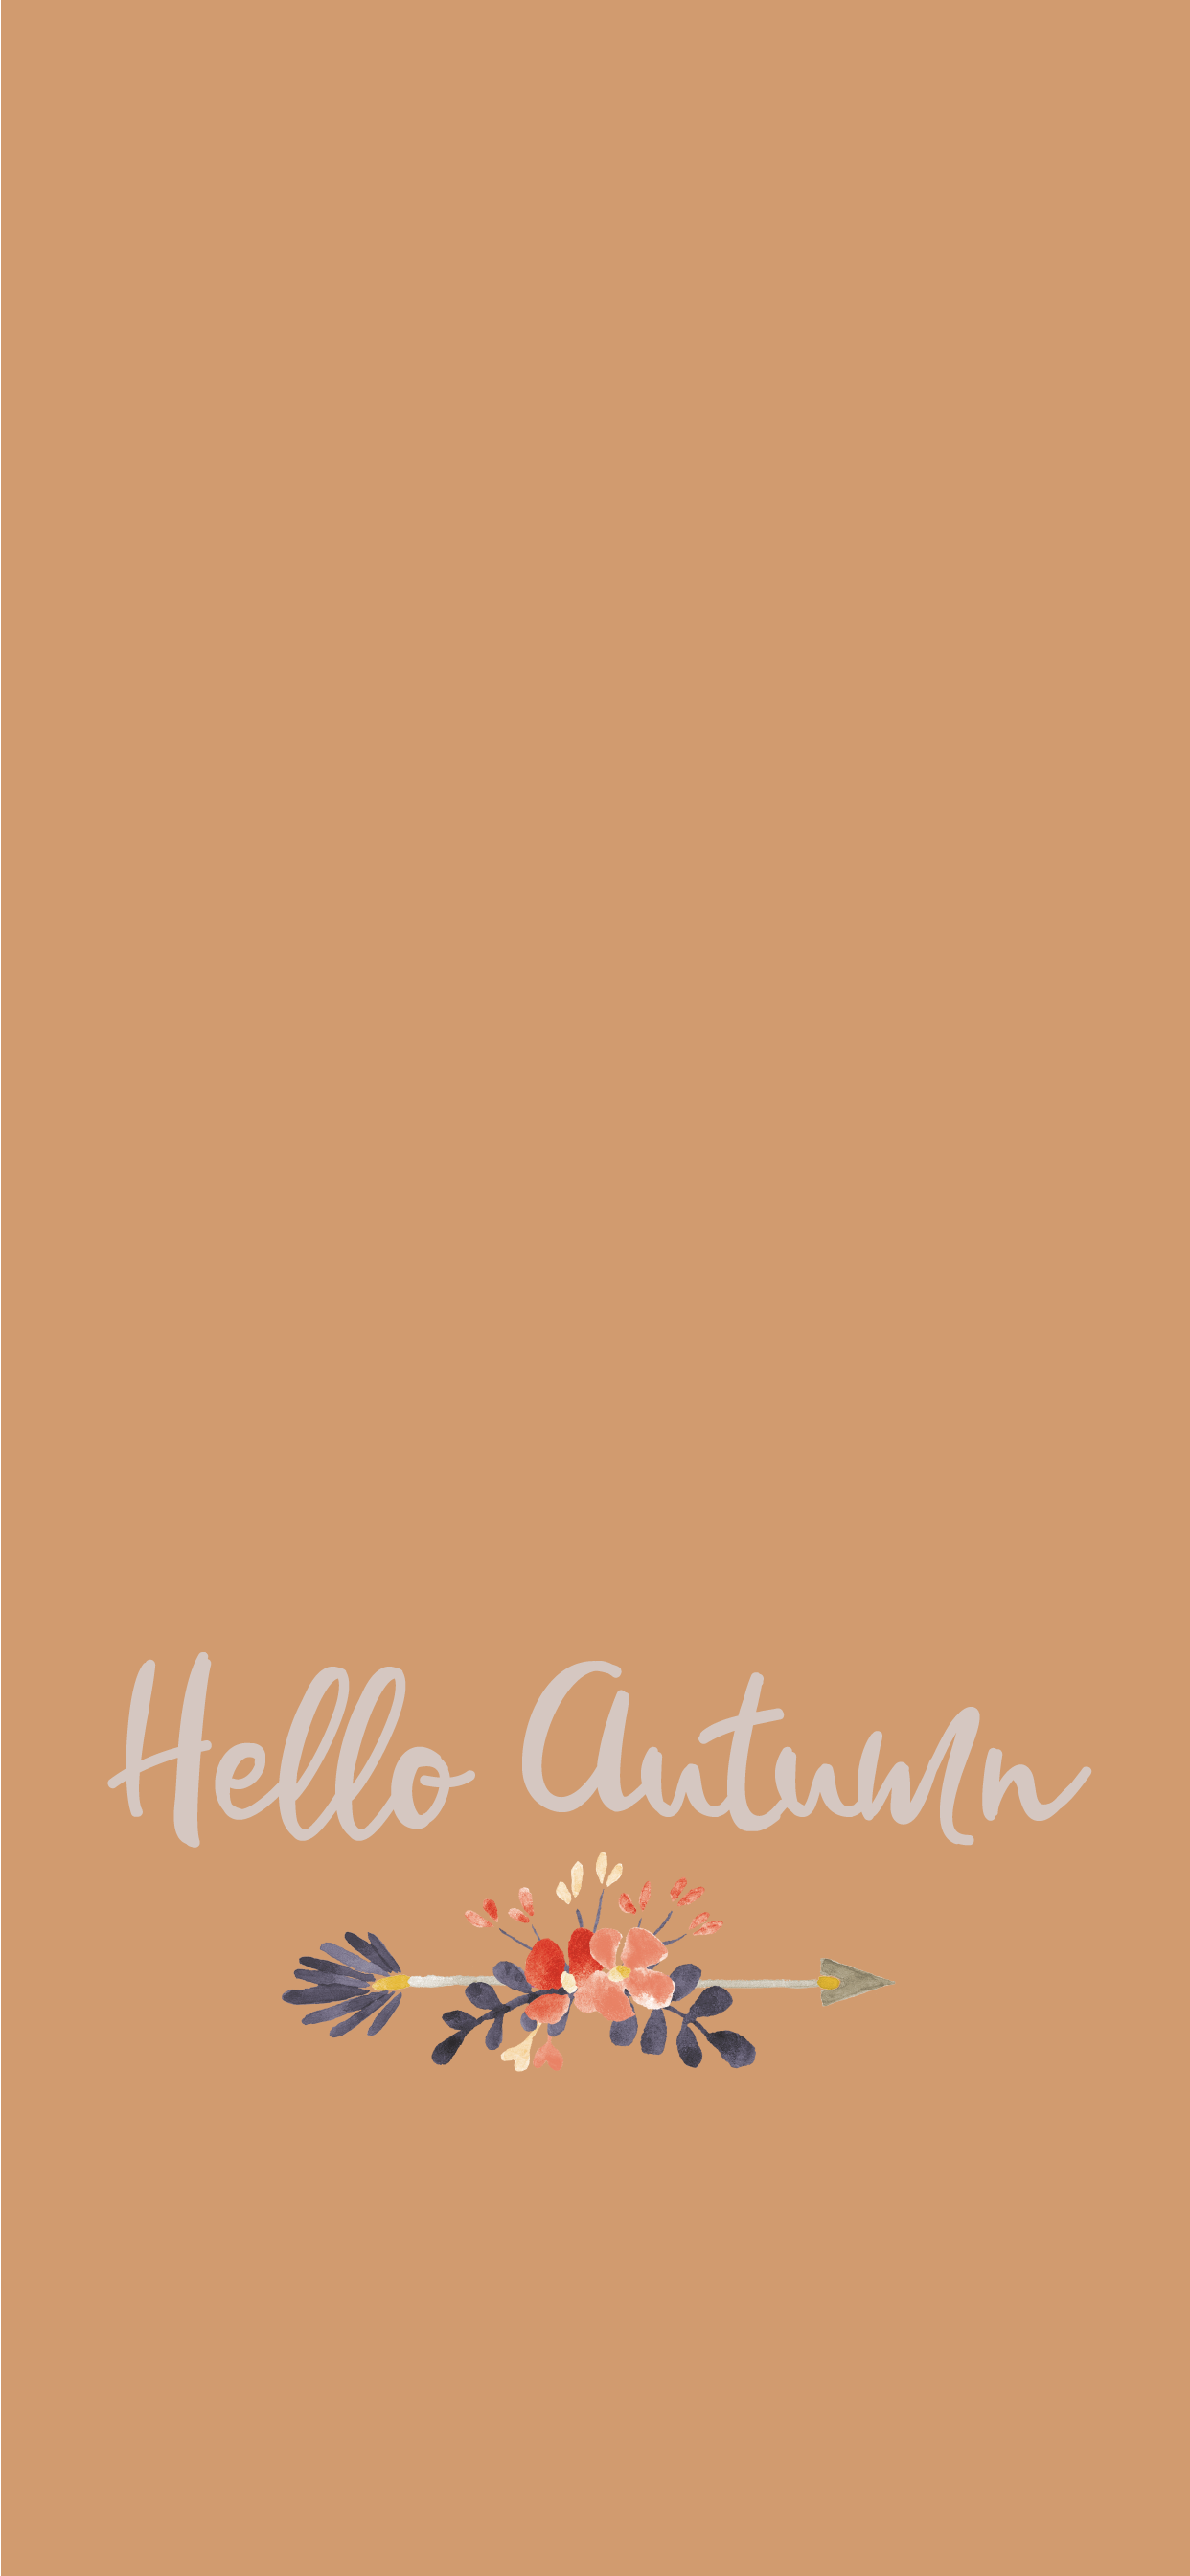 Hello Autumn Background Free